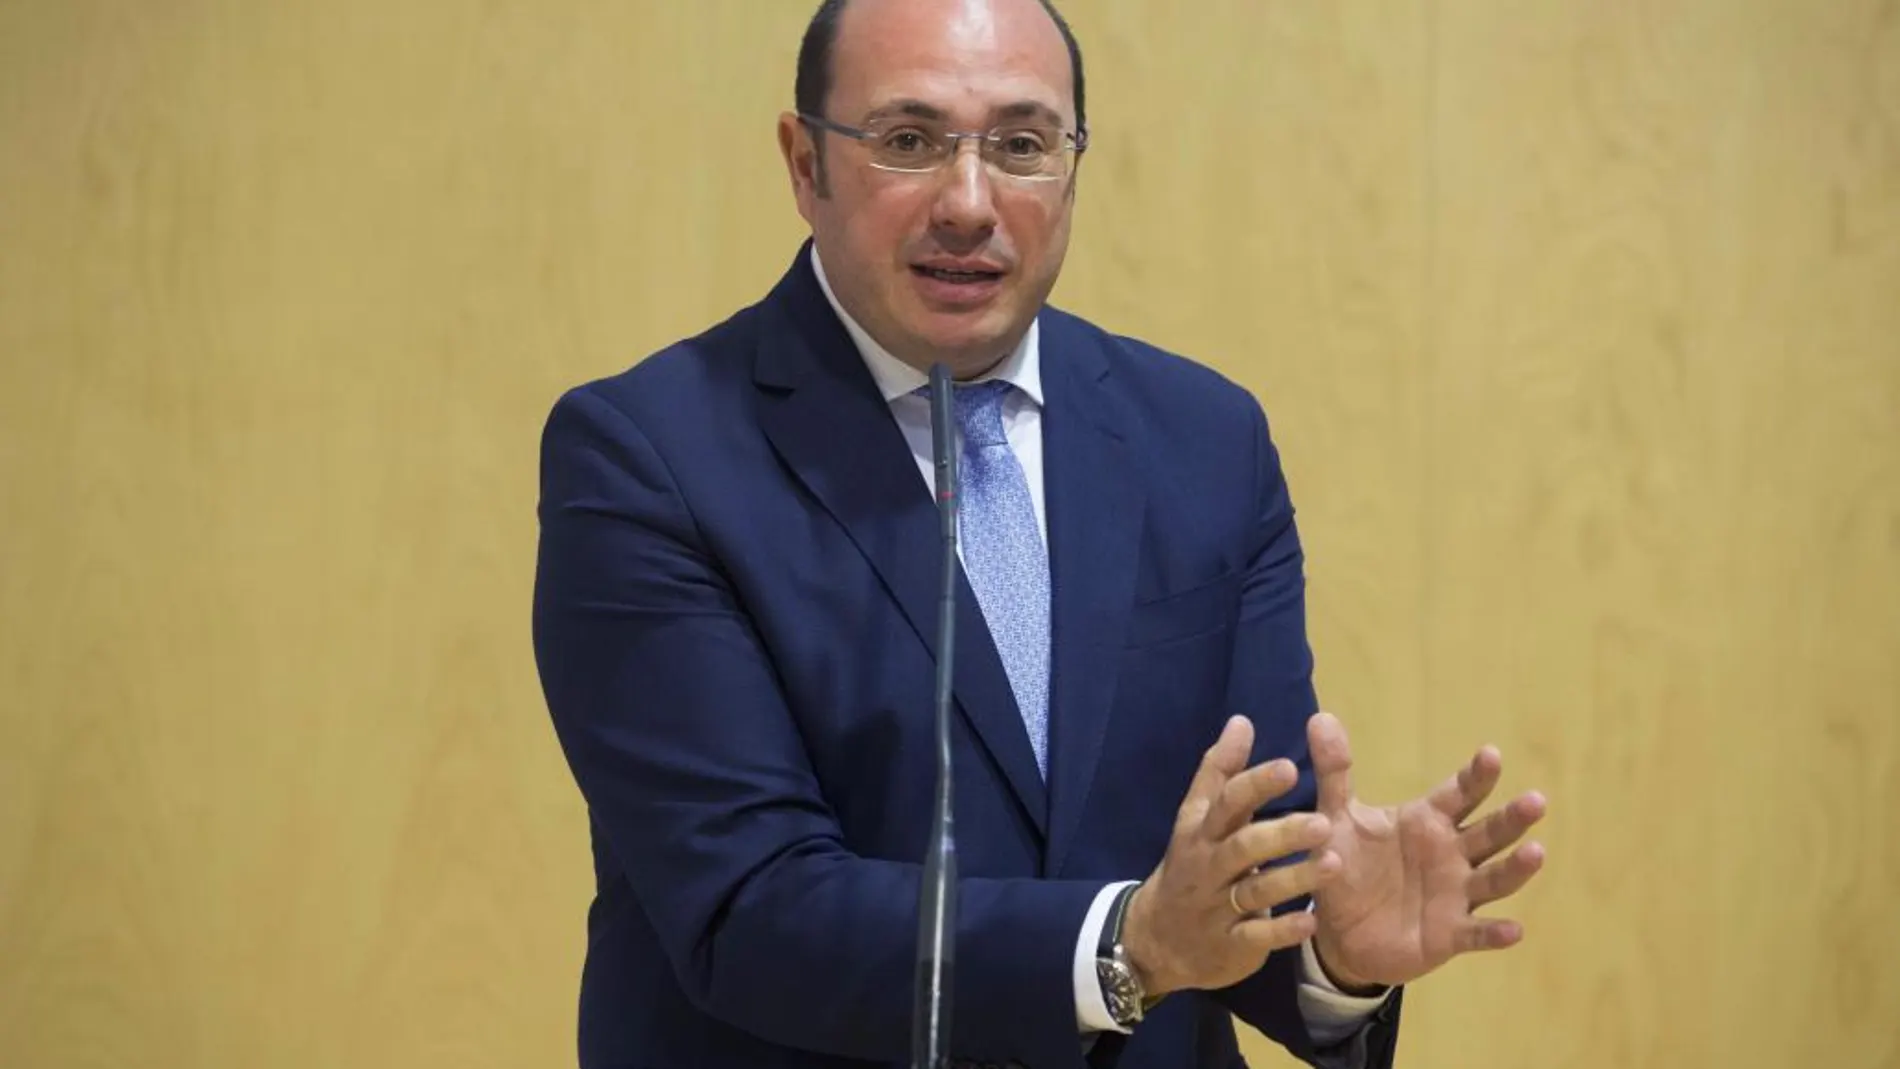 El presidente de la Región de Murcia Pedro Antonio Sánchez